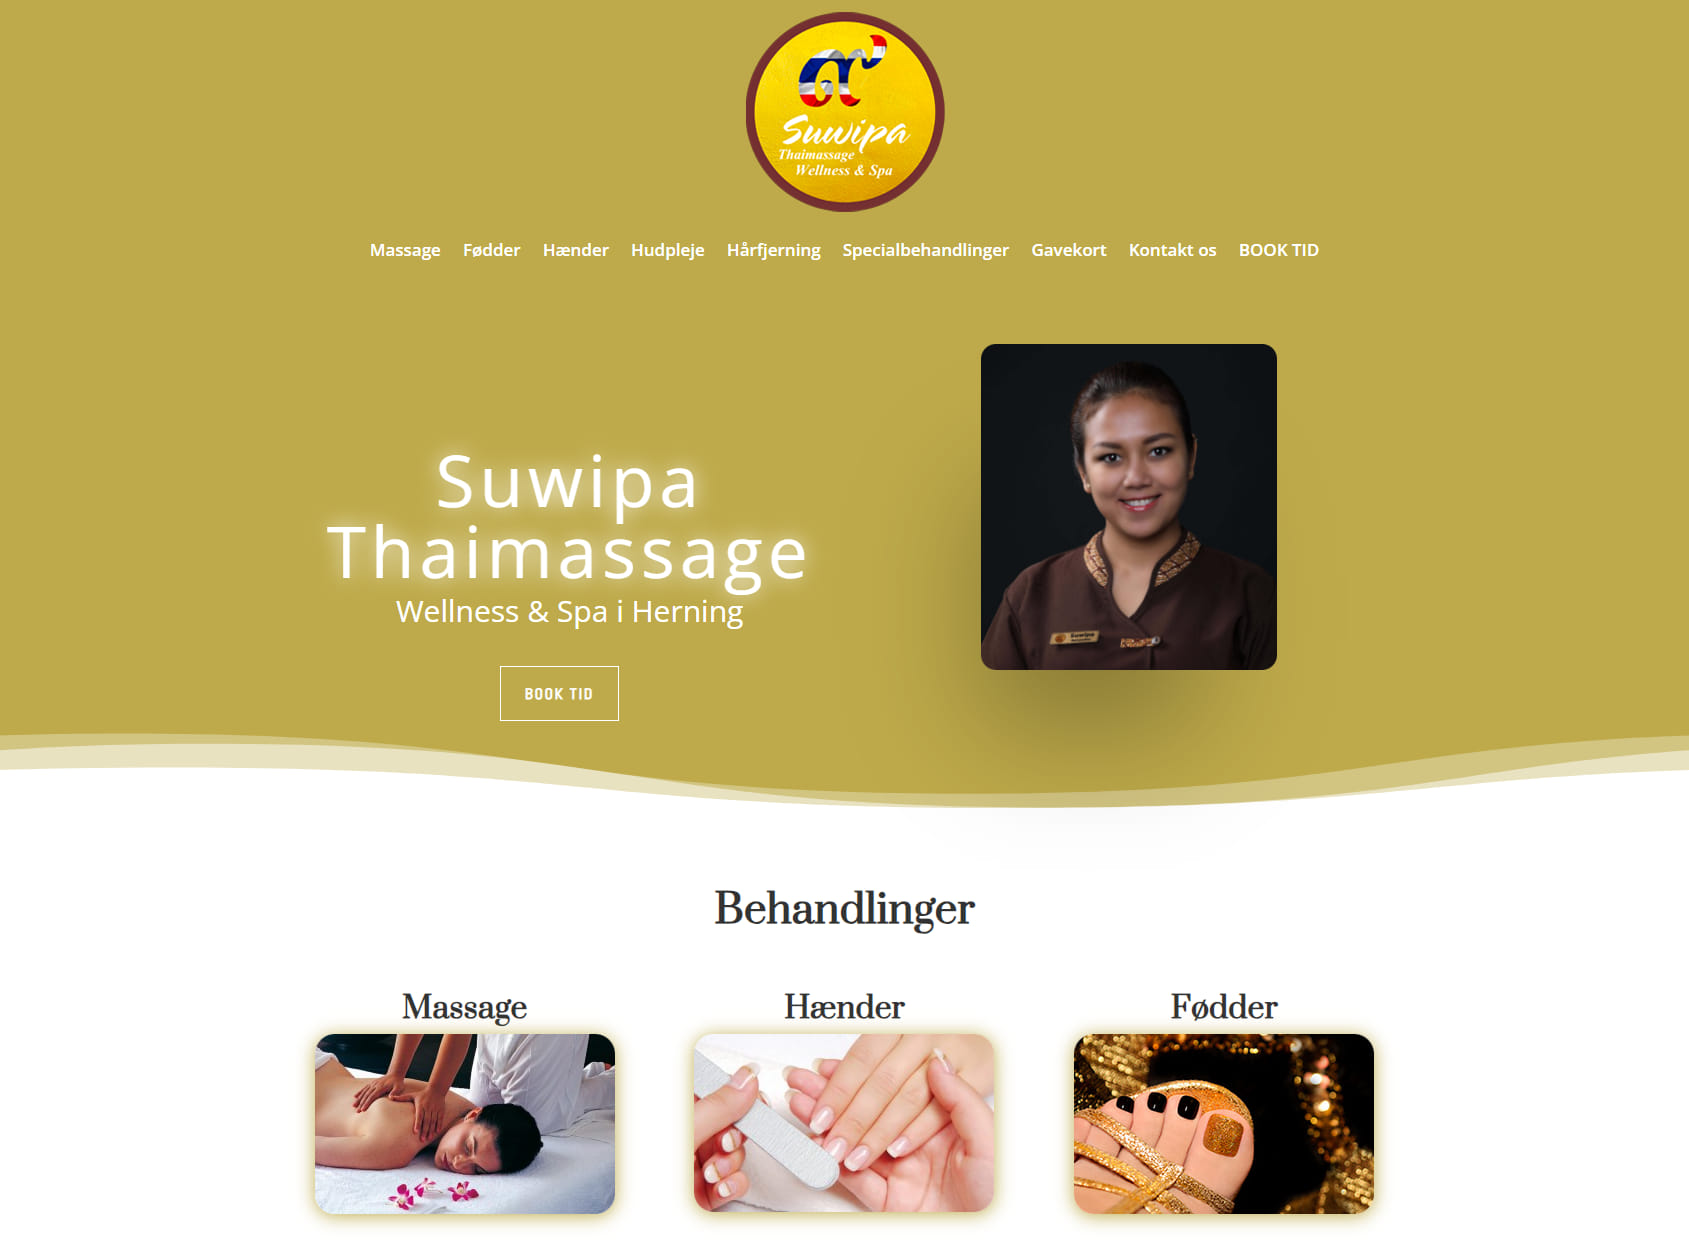 Suwipa Thaimassage & Wellness